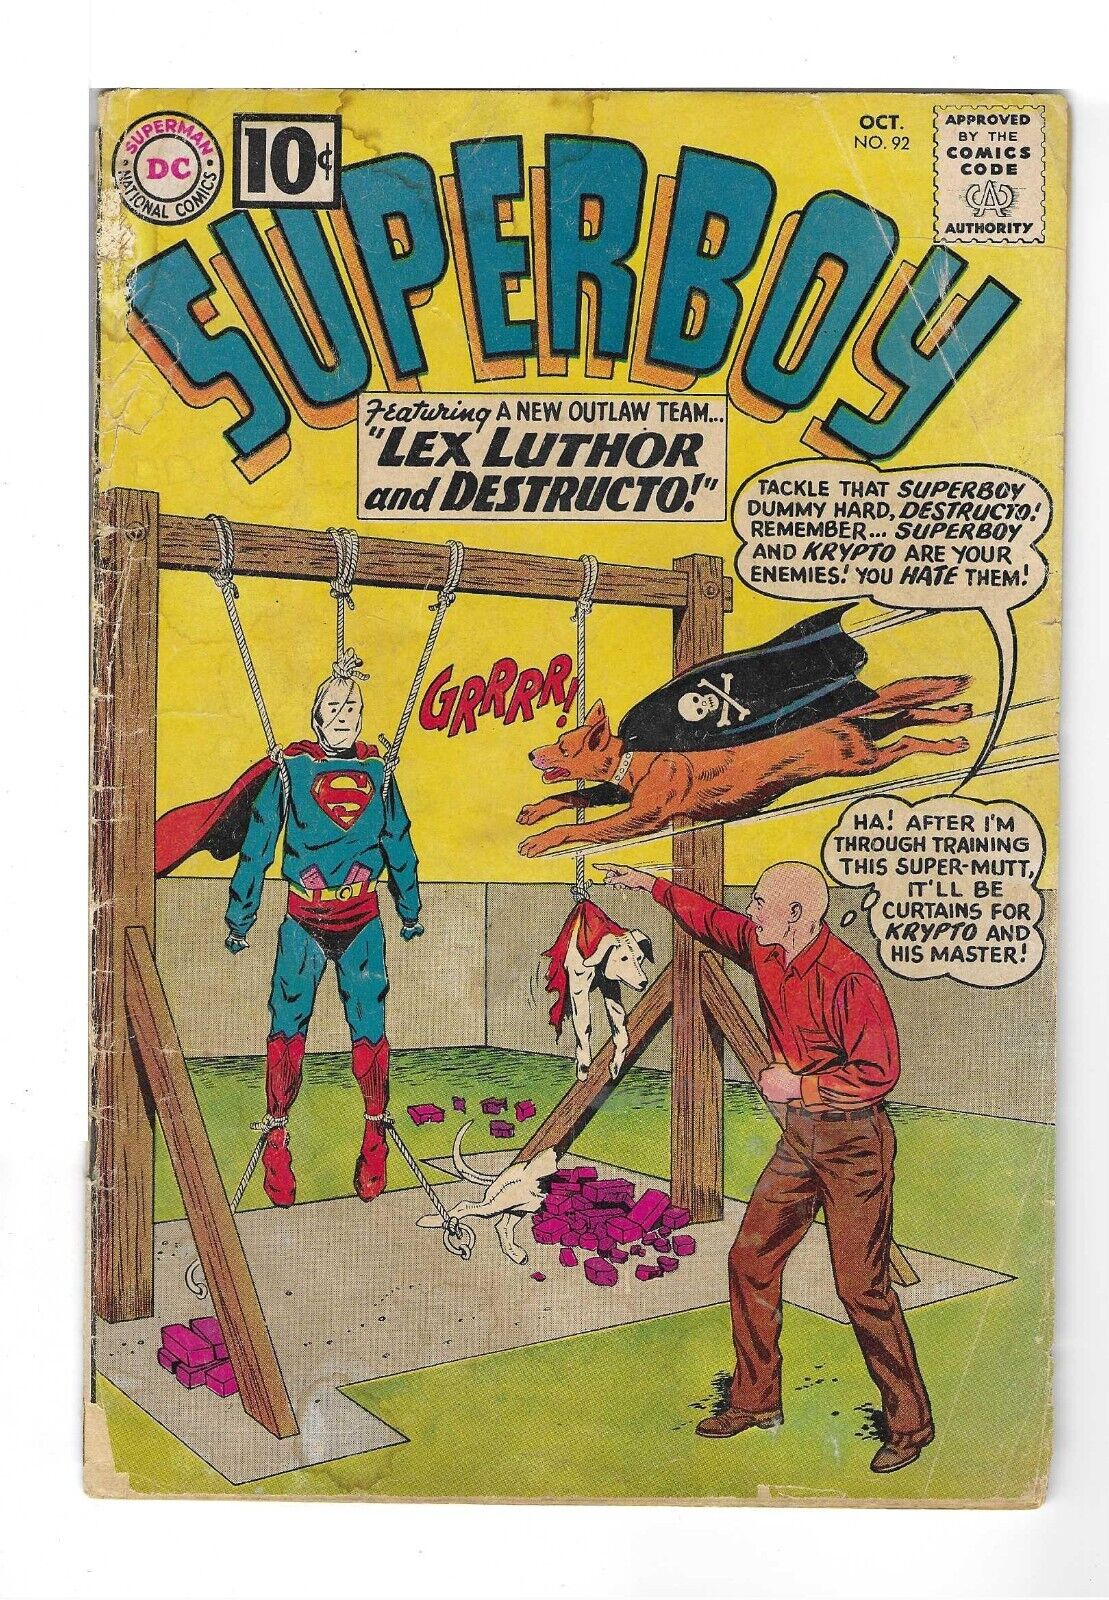 SUPERBOY #92 --- ORIGIN OF LEX LUTHOR RETOLD DC Comics 1961 FR/GD